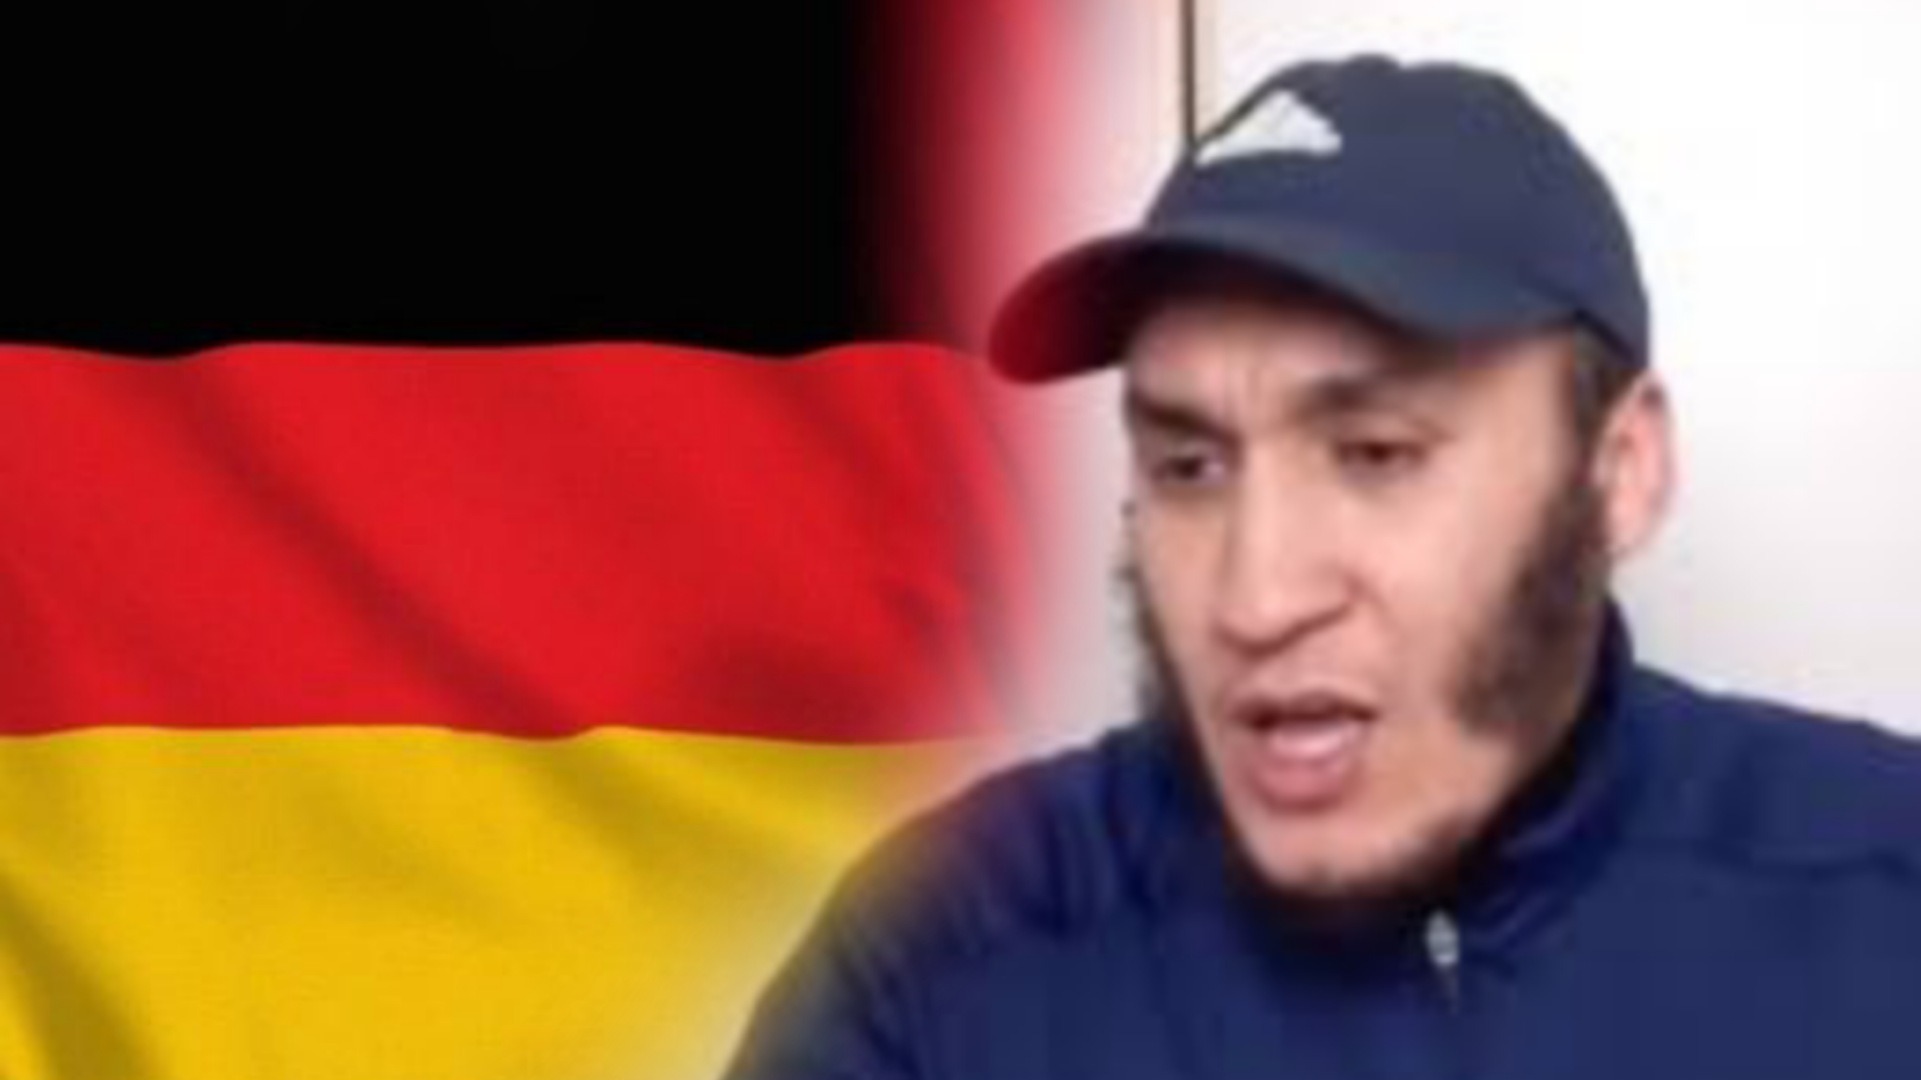 موقع فرنسي يحرج ألمانيا ويفضحها: “ألمانيا تحتضن الإرهابي حاجب وتعتبر تصريحاته المتطرفة “حرية تعبير”